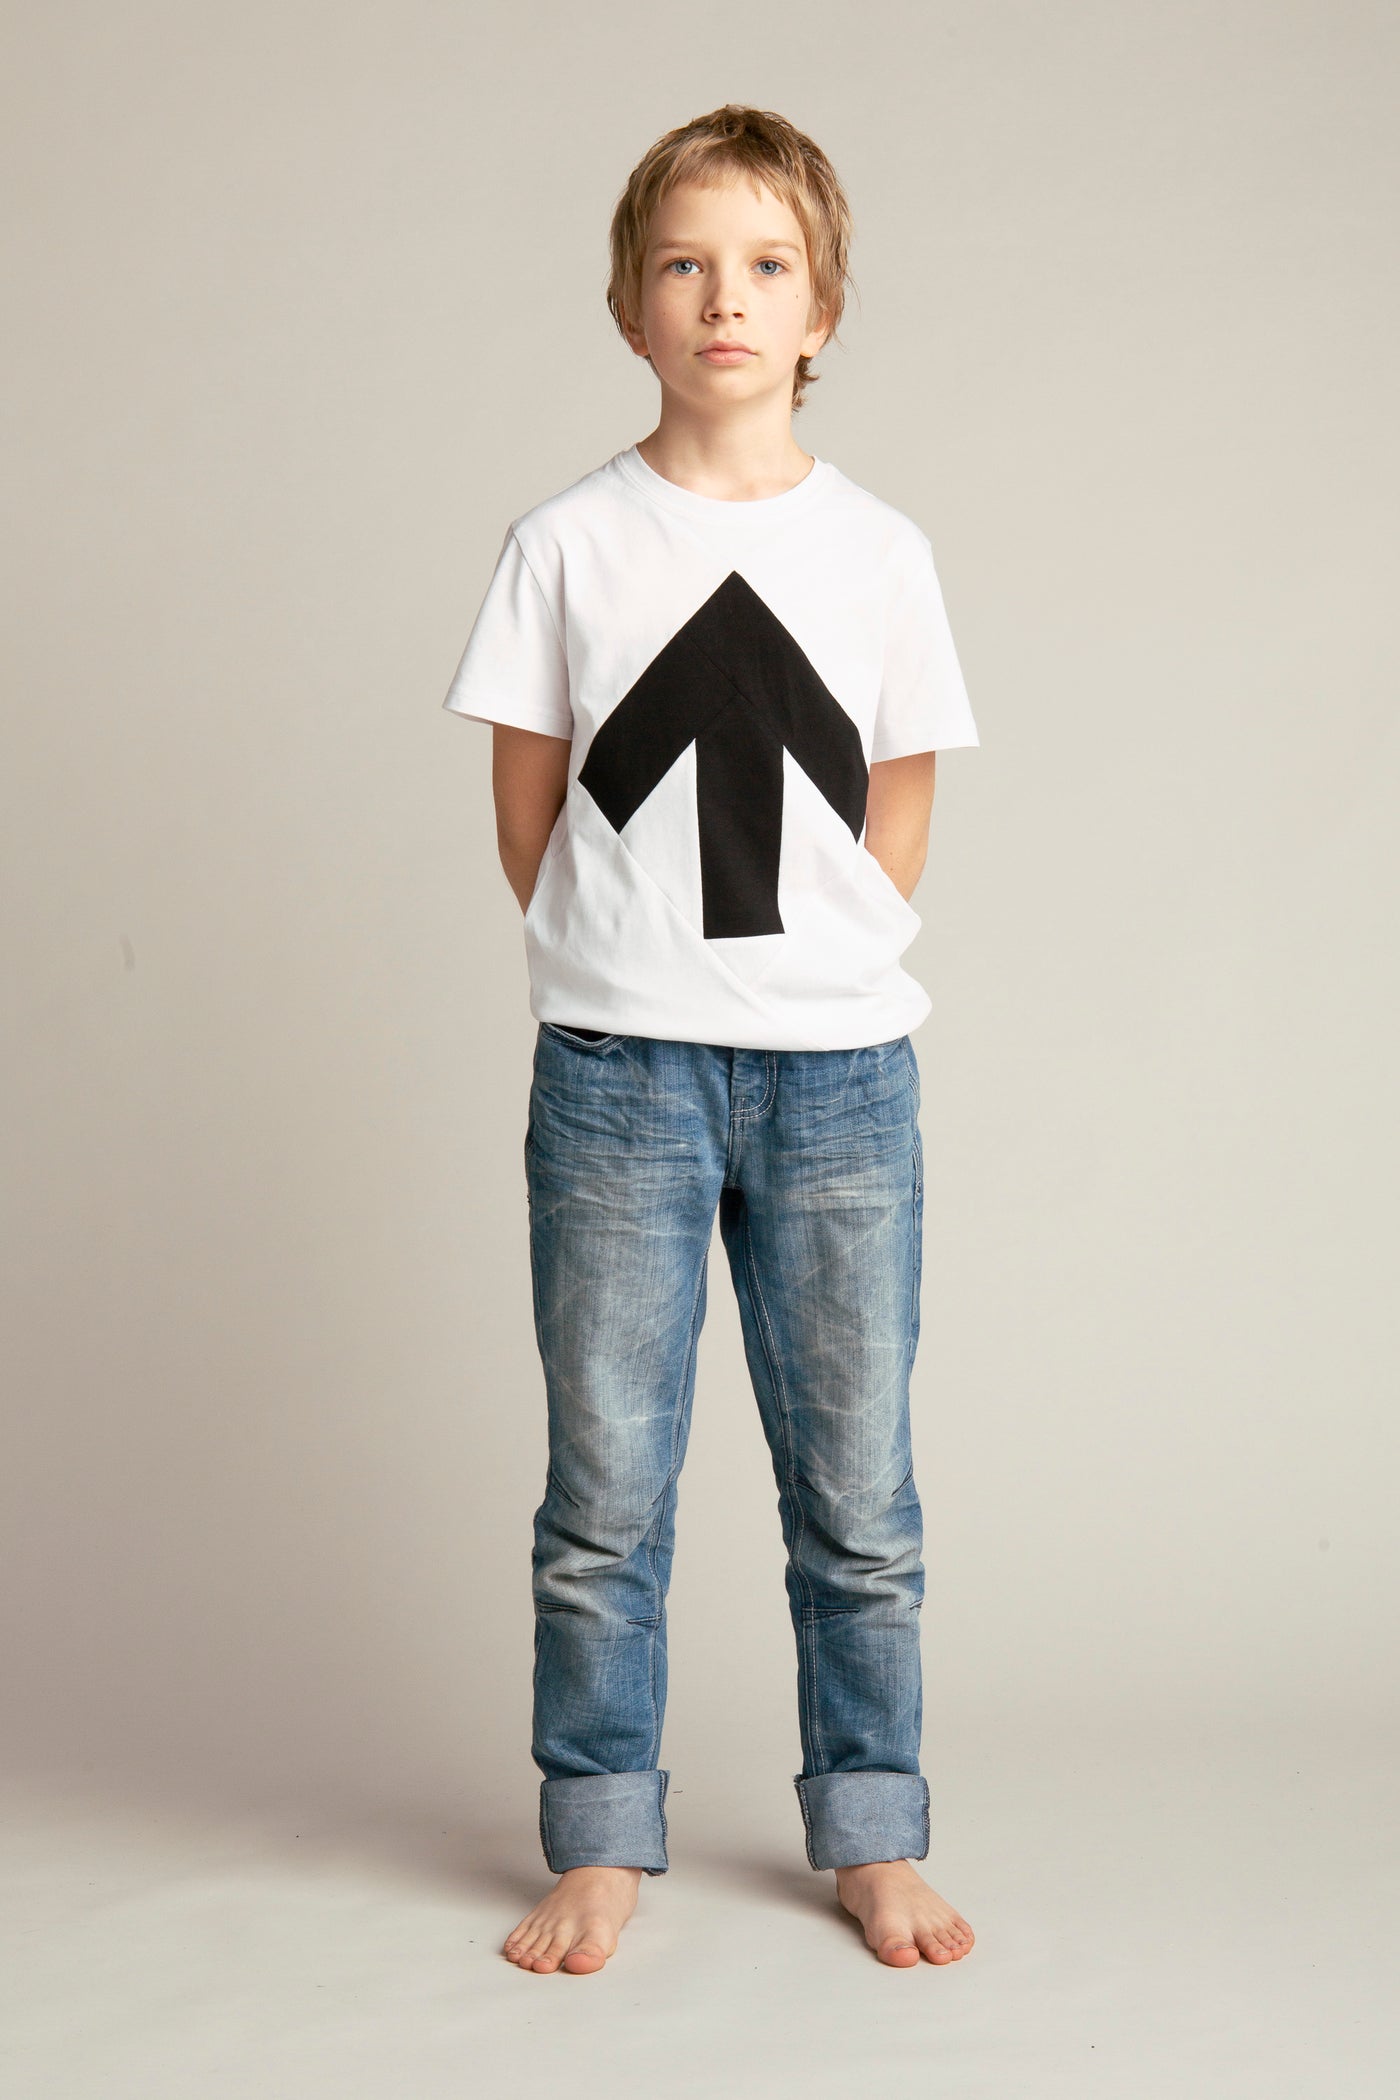 Up-shirt for kids | White, black